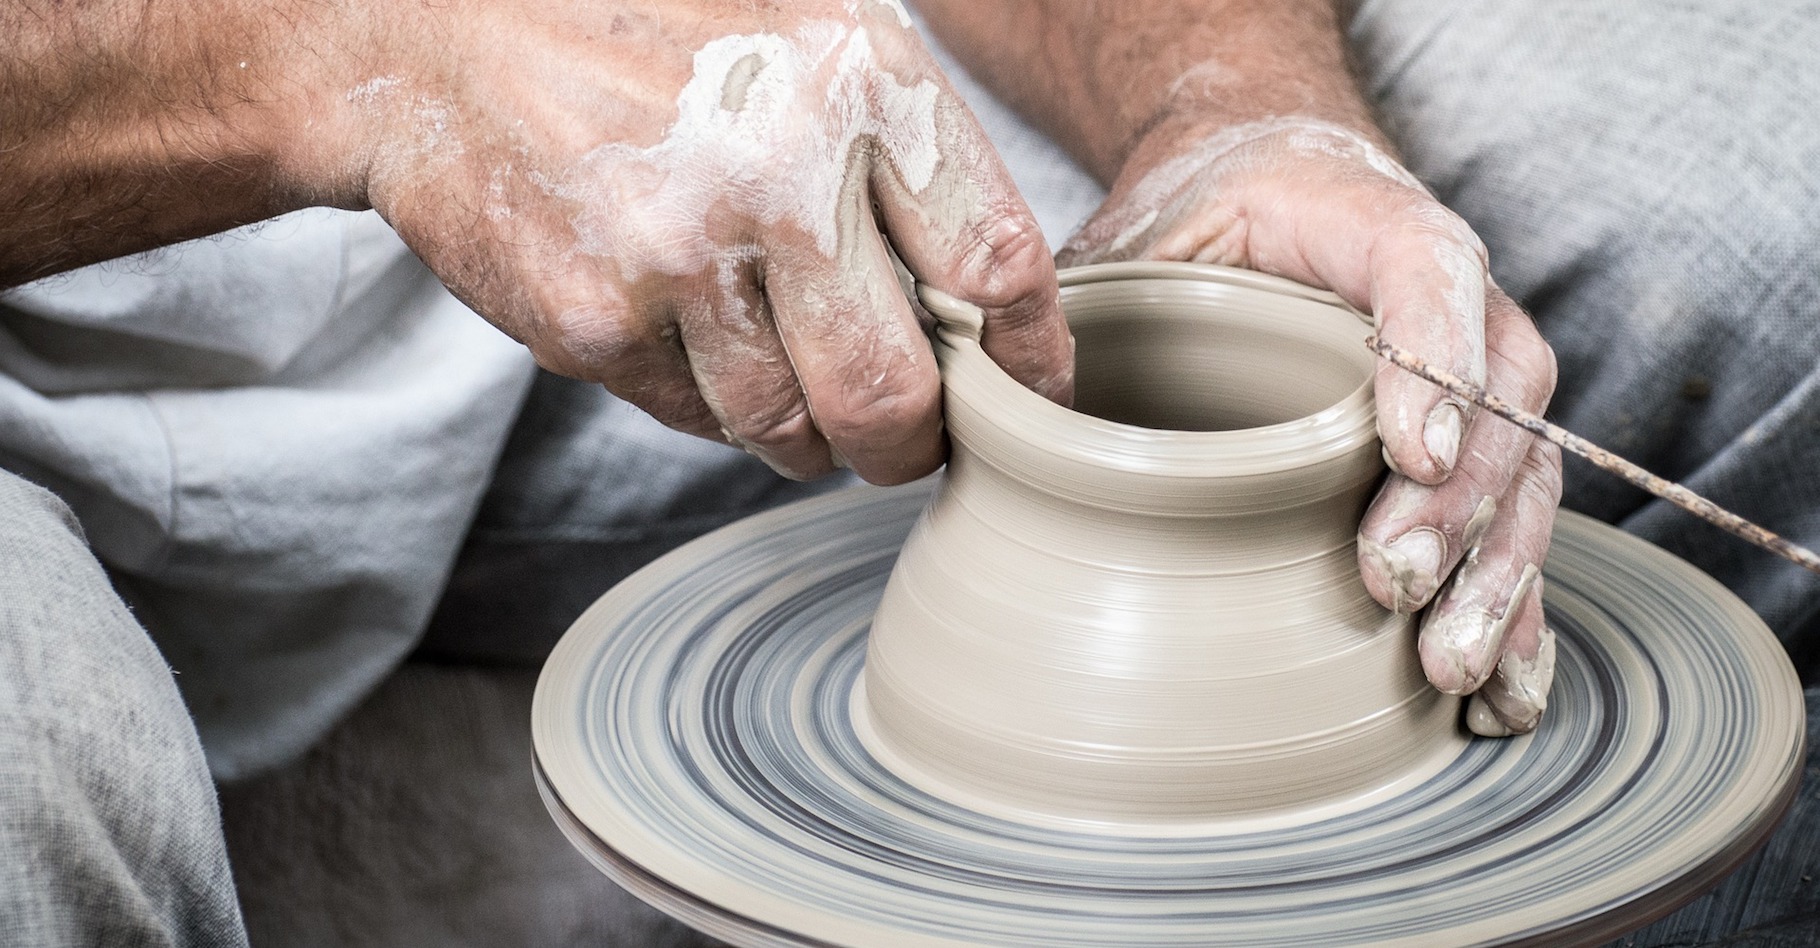 Le terme céramique est employé pour désigner un objet en terre cuite ou pour qualifier un matériau plus technique utilisé dans l’industrie. © LubosHouska, Pixabay, CC0 Creative Commons